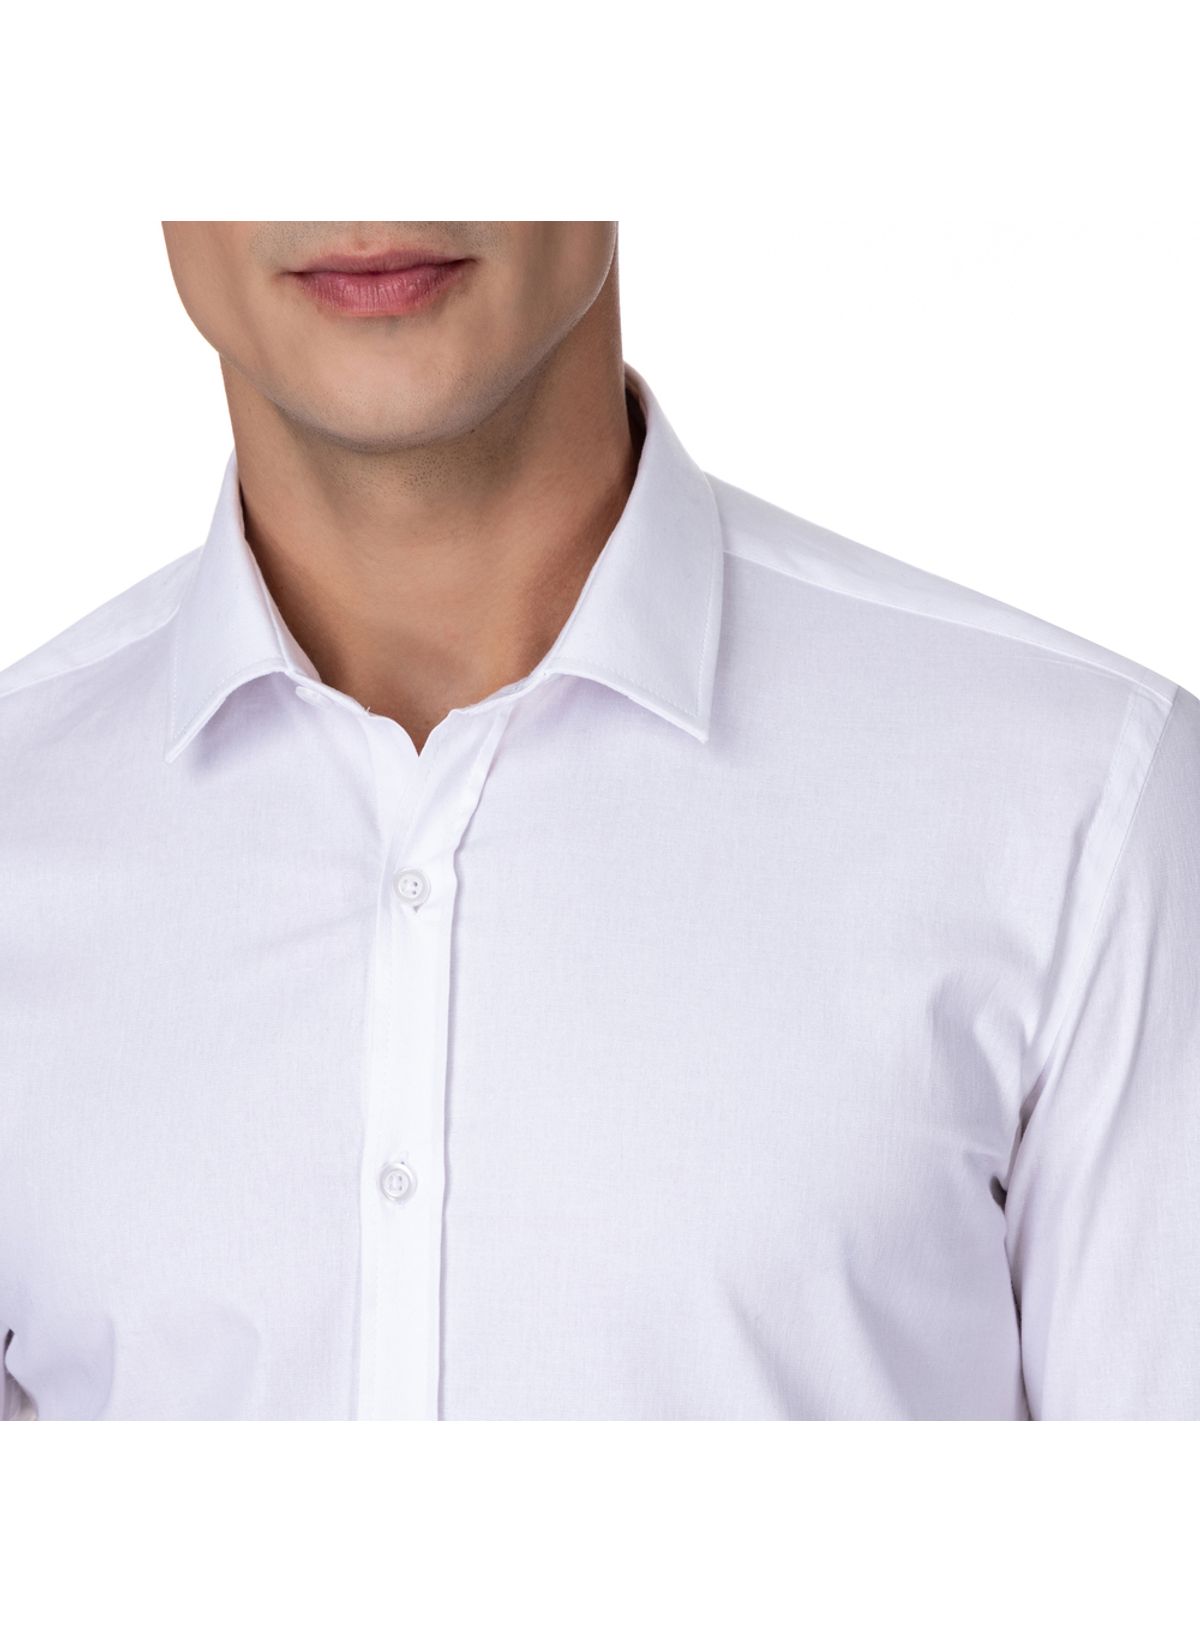 IZOD Camisa social masculina, ajuste regular, elástica, com botões,  colarinho, Prado, 15-15.5 Neck 32-33 Sleeve : : Moda